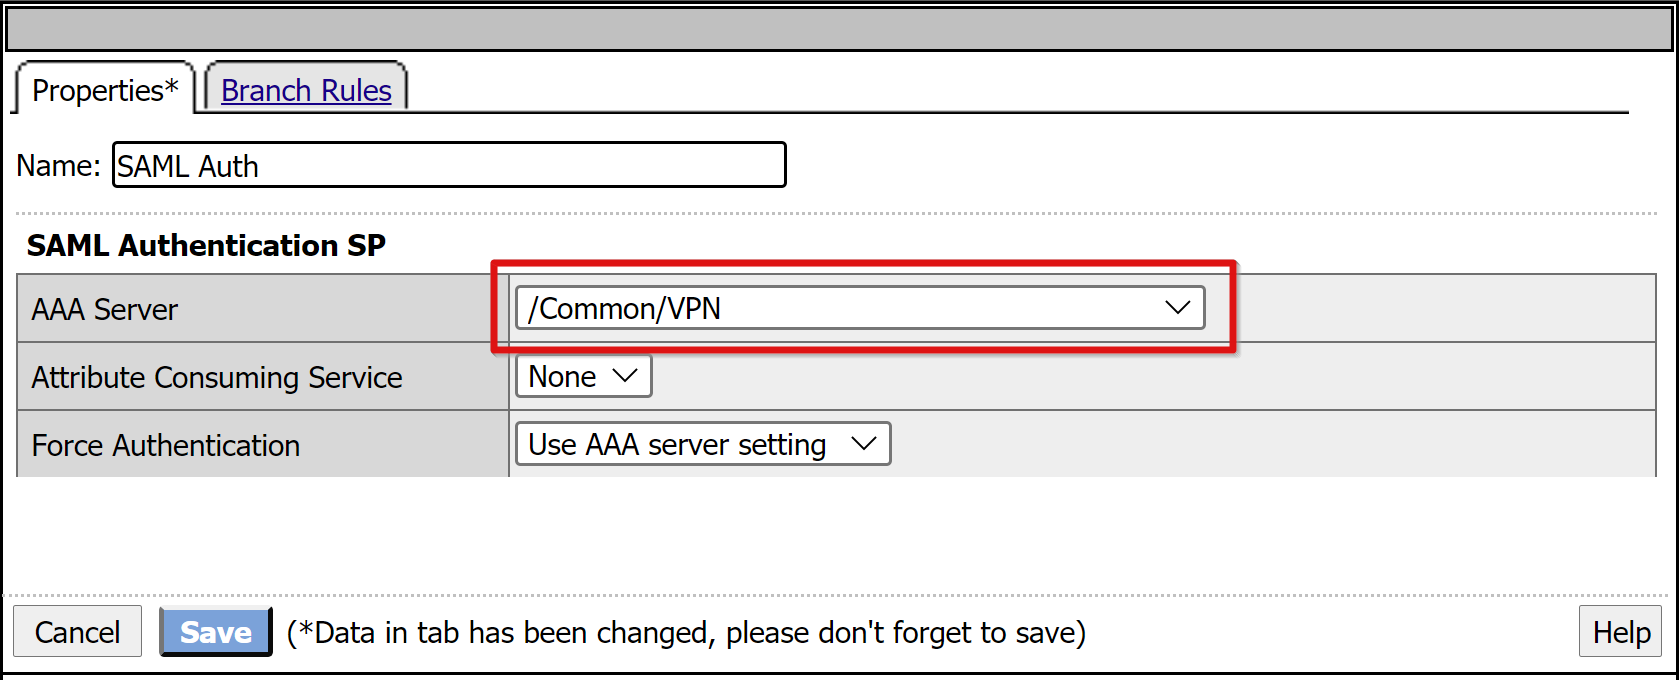 Schermopname van de vermelding AAA-server onder SAML Authentication SP op het tabblad Eigenschappen.